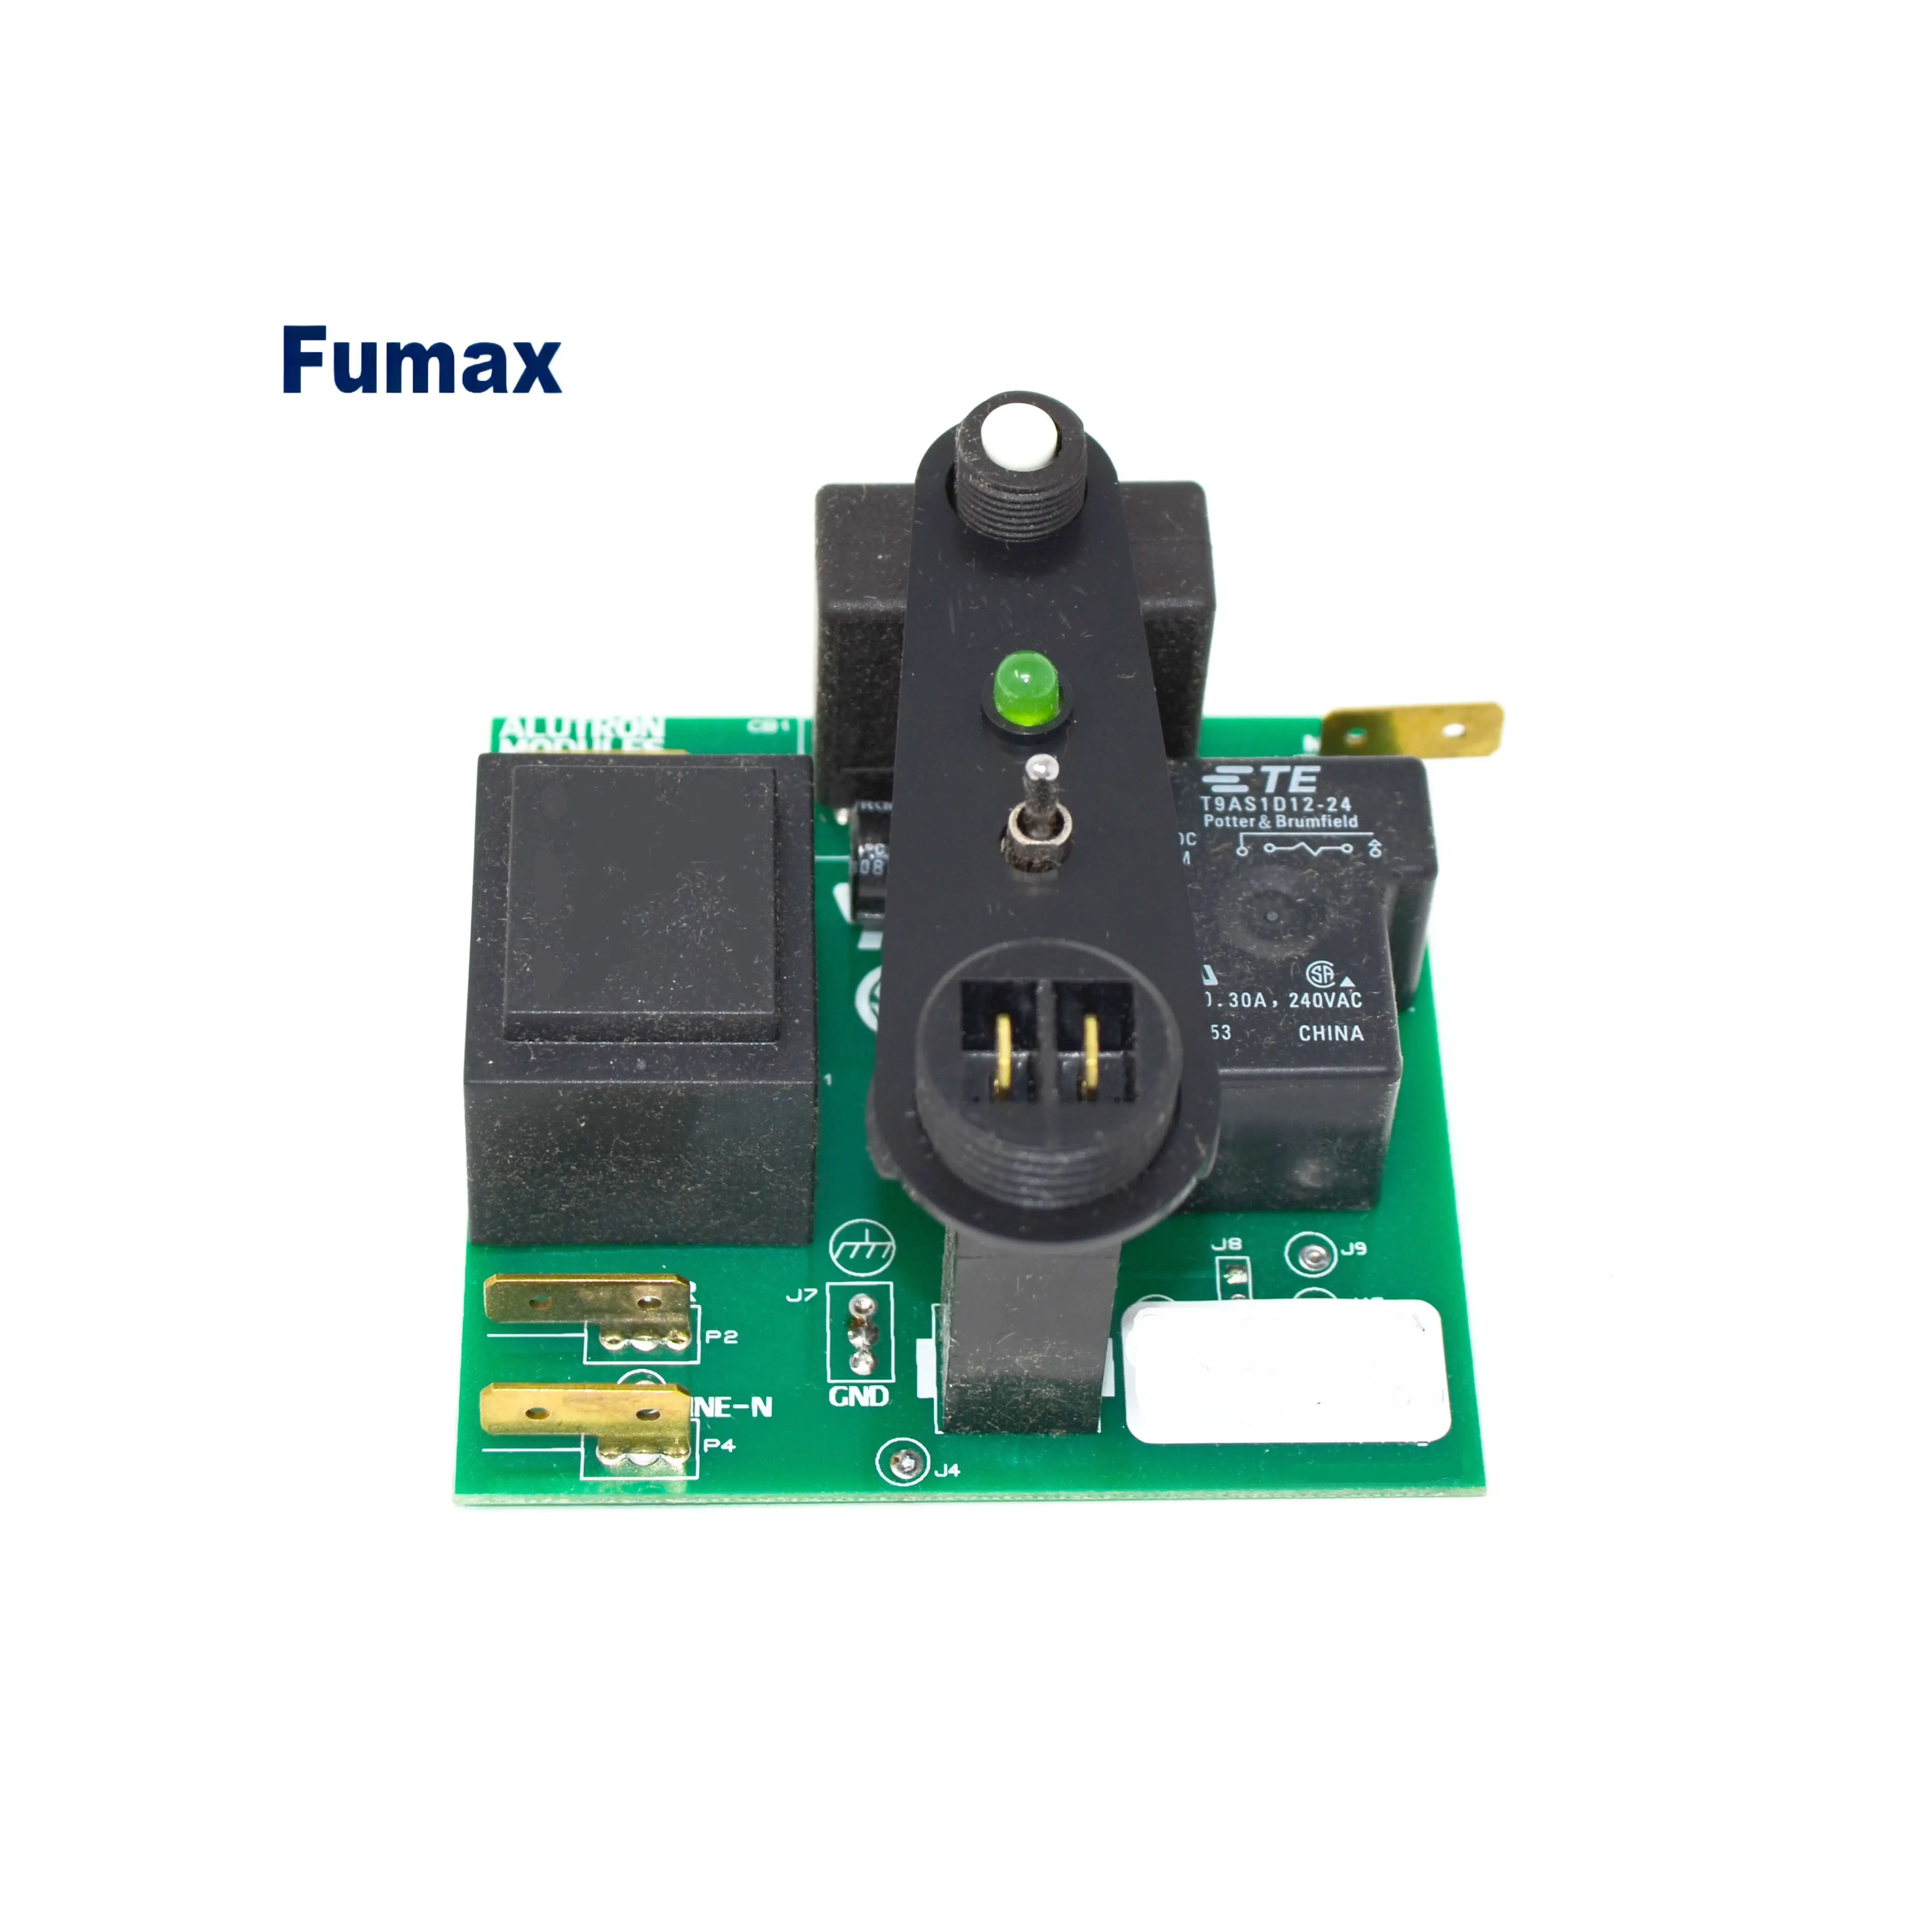 Fumax multicamada cctv Personalizado pcb oem placa personalizada fabricante Placa De Circuito OEM transportadora fabricação dispositivo